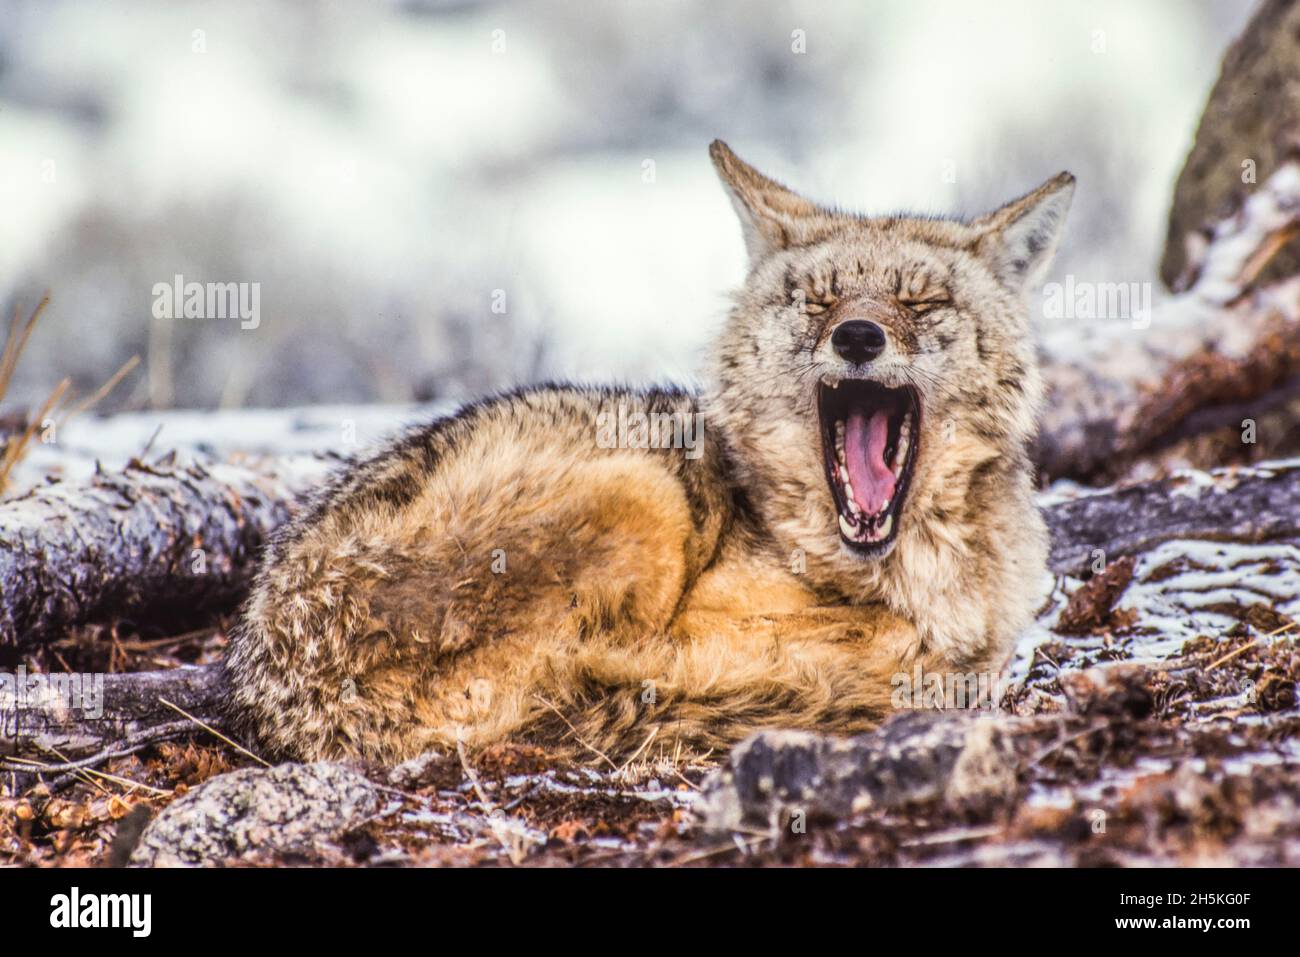 Un coyote endormi (Canis latrans) s'est enroulé sur le sol couvert de neige, s'éportant à la caméra; Yellowstone National Park, États-Unis d'Amérique Banque D'Images